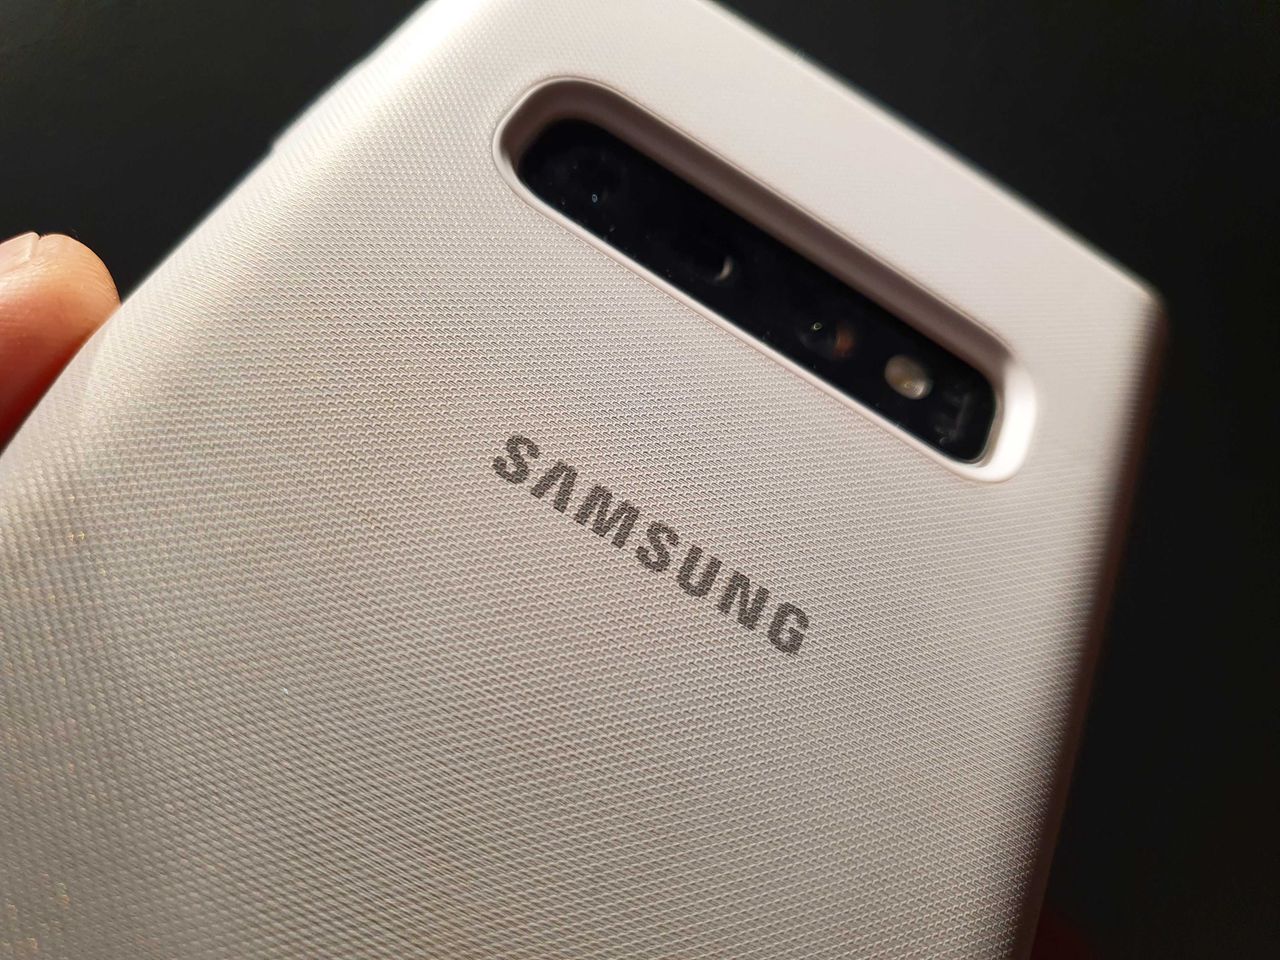 Samsung Galaxy Store pełen szkodliwych aplikacji. Kradną dane i pieniądze